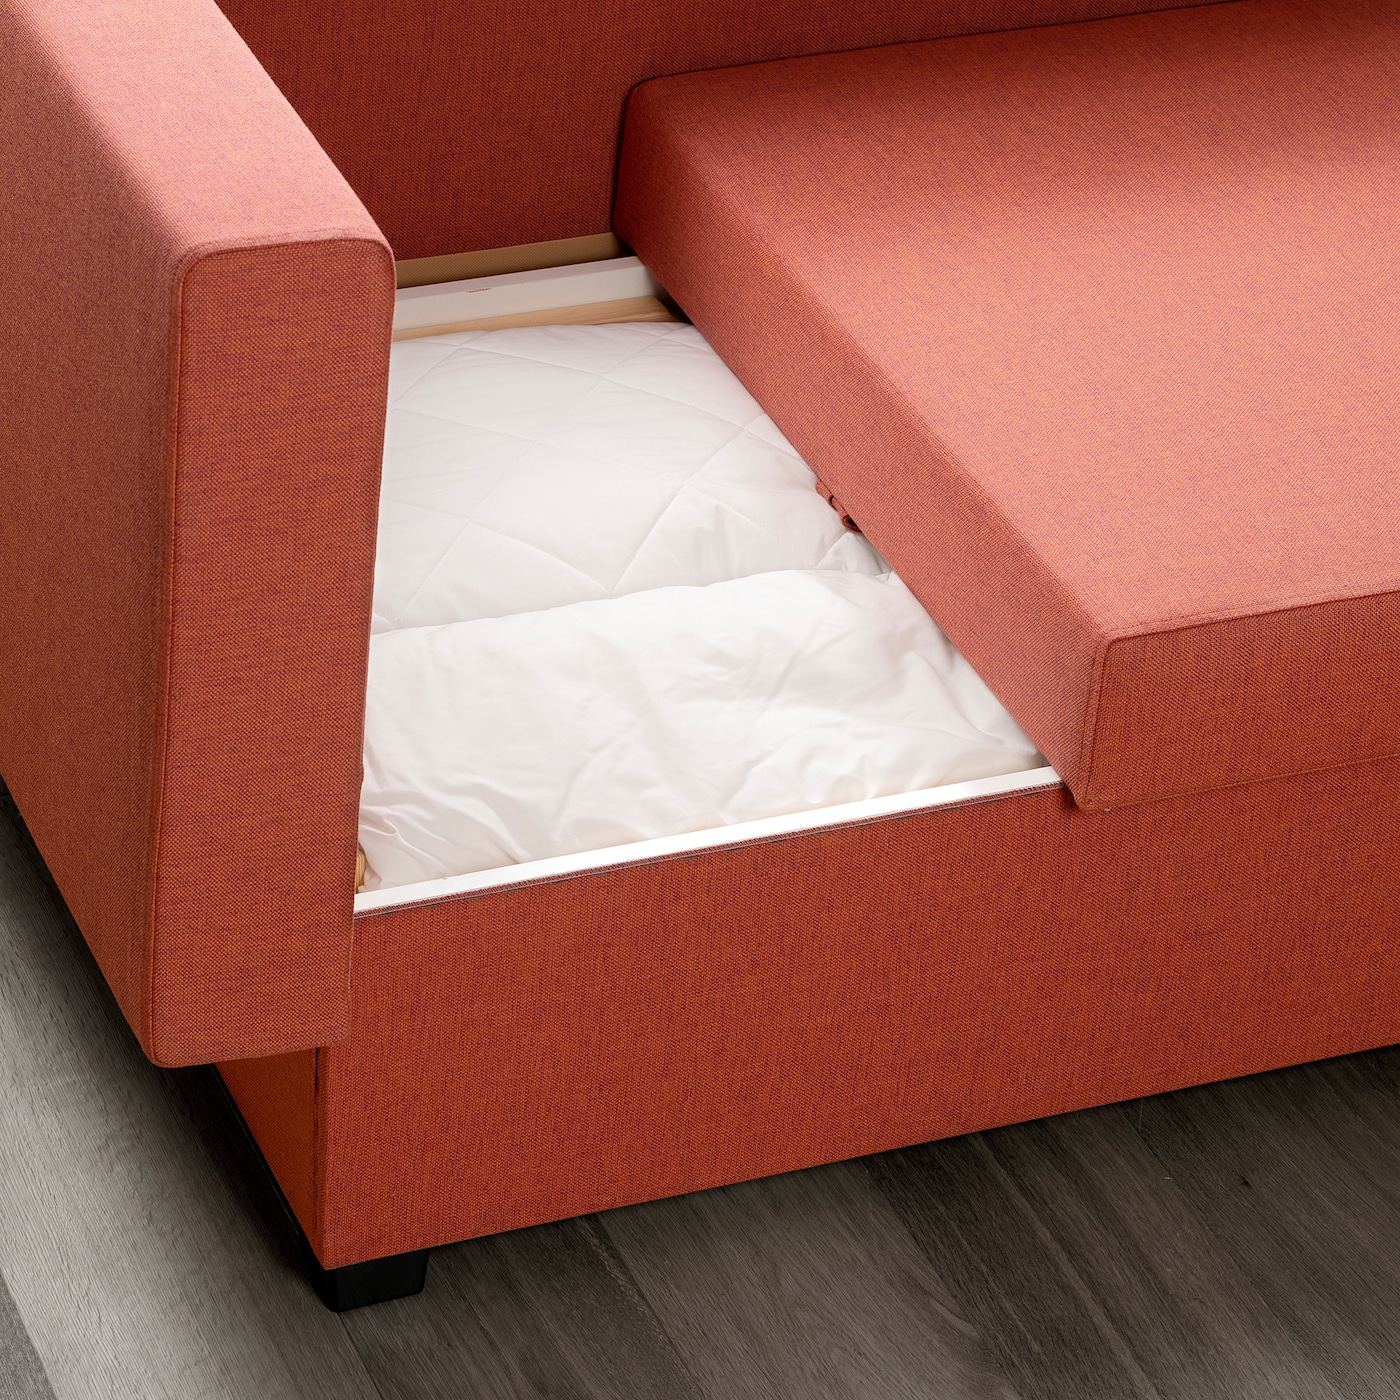 Грэлльста 2 местный диван кровать сандсбру оранжевый